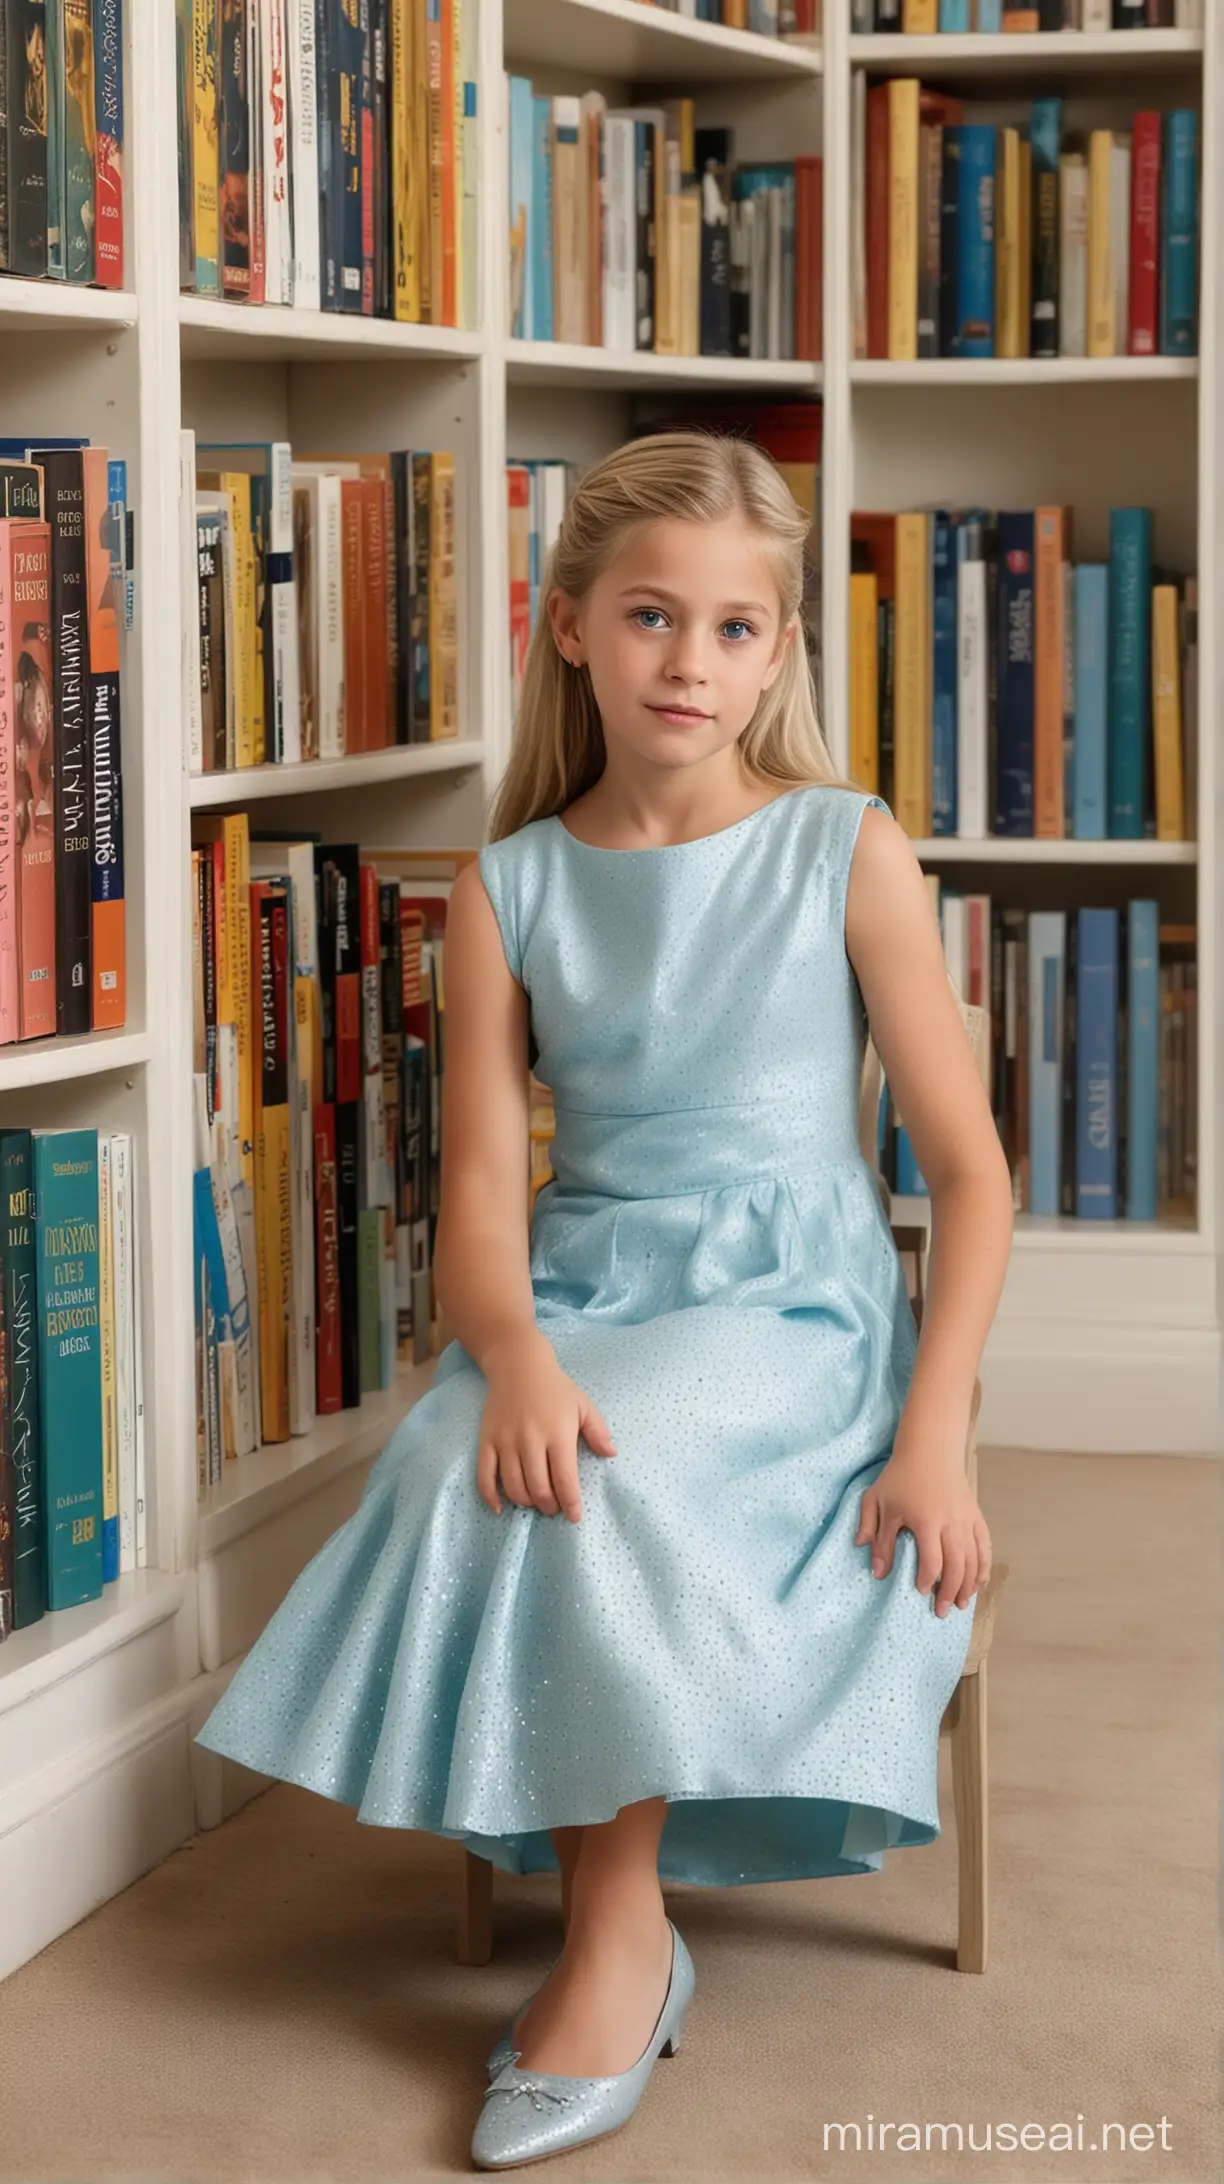 A princesa Aline, de 10 anos, 1.52m de altura, cabelos loiros curtos, olhos azuis. Vestindo um vestido azul claro, sentada no chao, ao fundo prateleiras de livros de corpo inteiro baseado na cantora aline barros